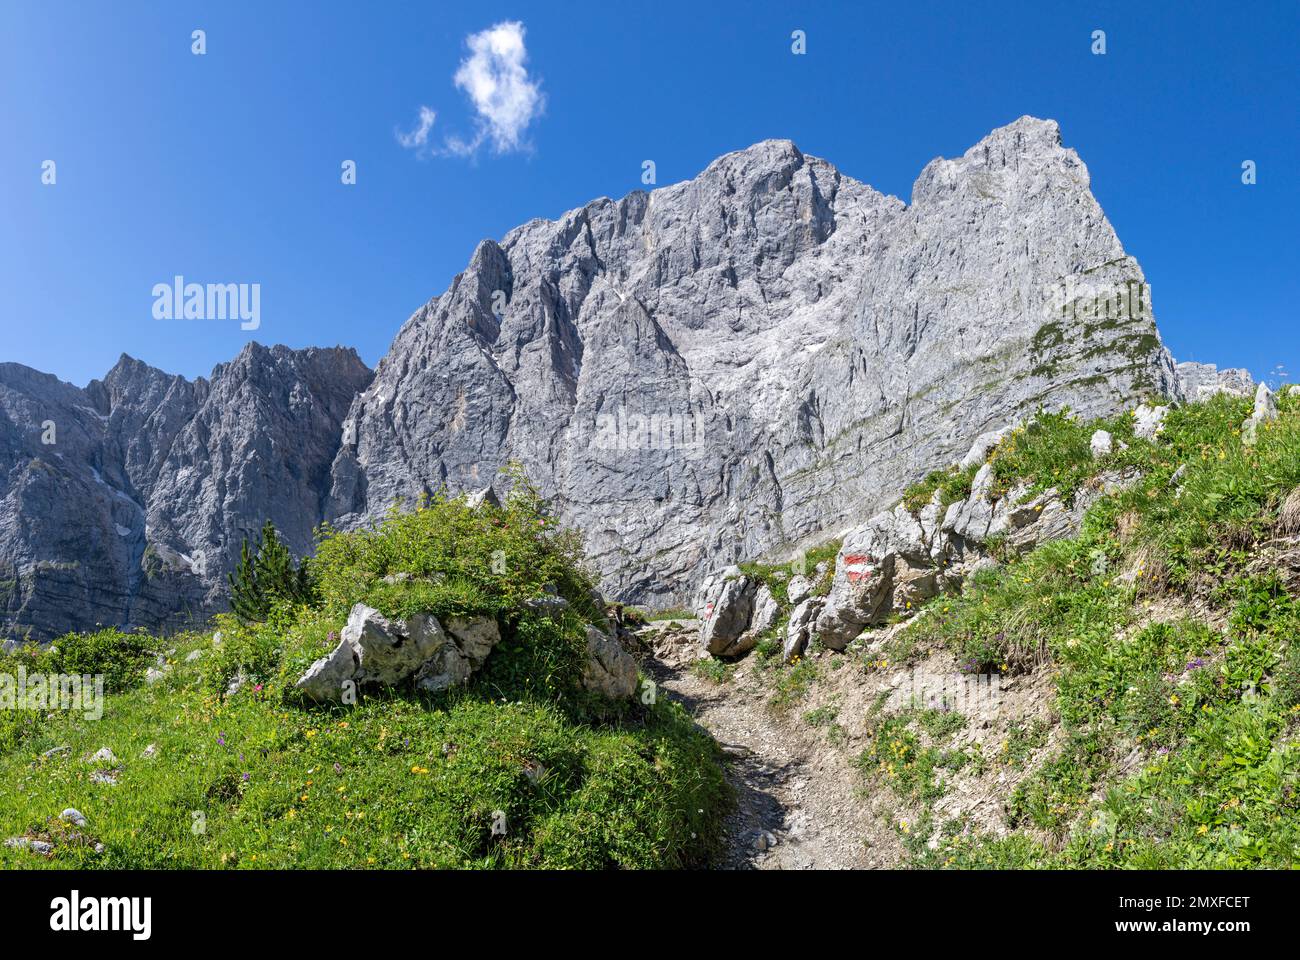 Die Nordmauern des Karwendel-Gebirges - Mauern der Grubenkarspitze. Stockfoto